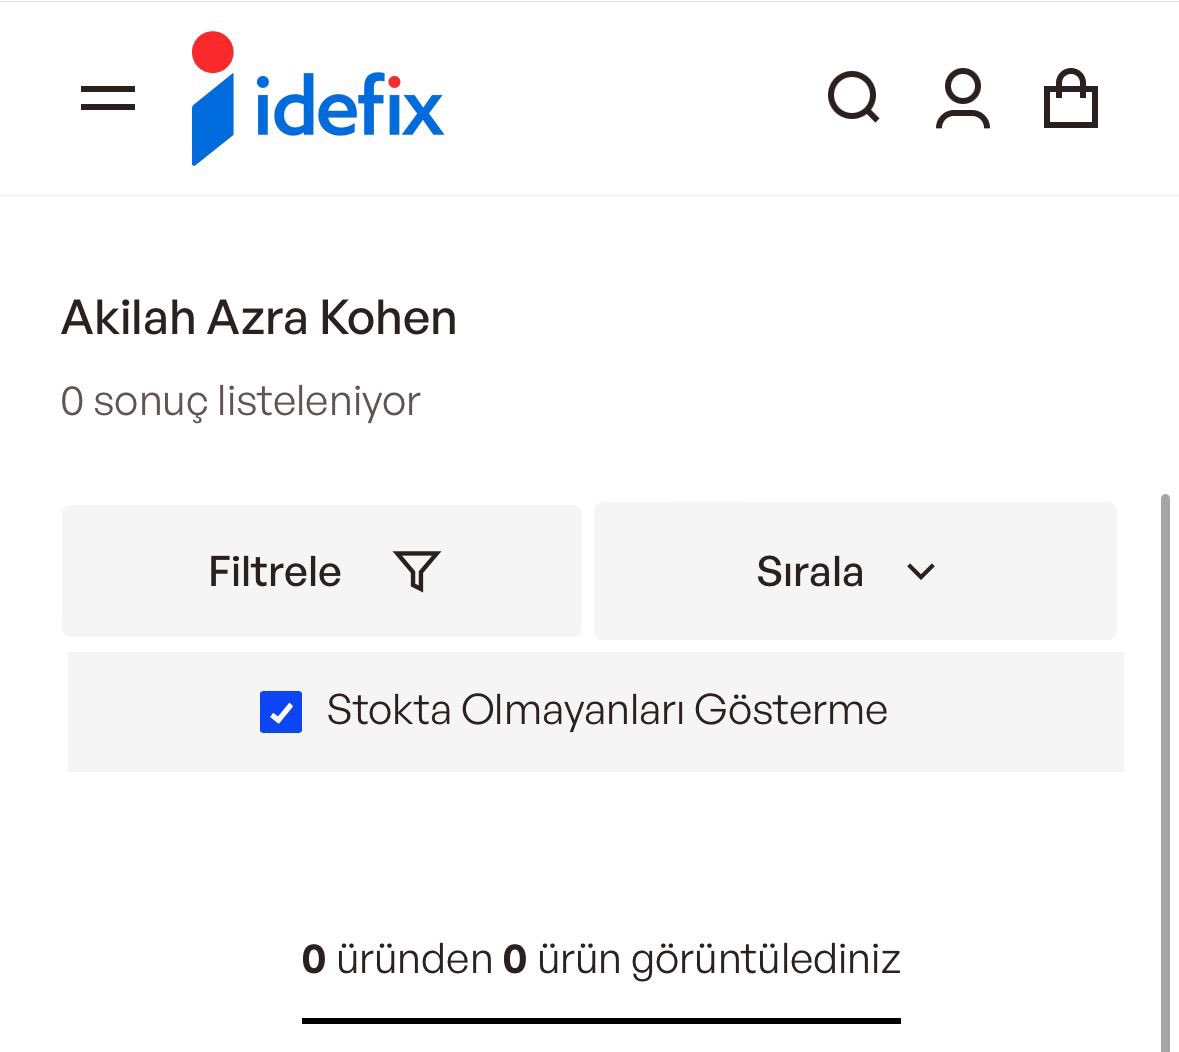 Turkuvaz Medya Grubuna ait D&R ve Idefix markaları Gazzelileri hedef alan Azra Kohen’e ait kitapların satışını internet sitelerinde sonlandırdı.